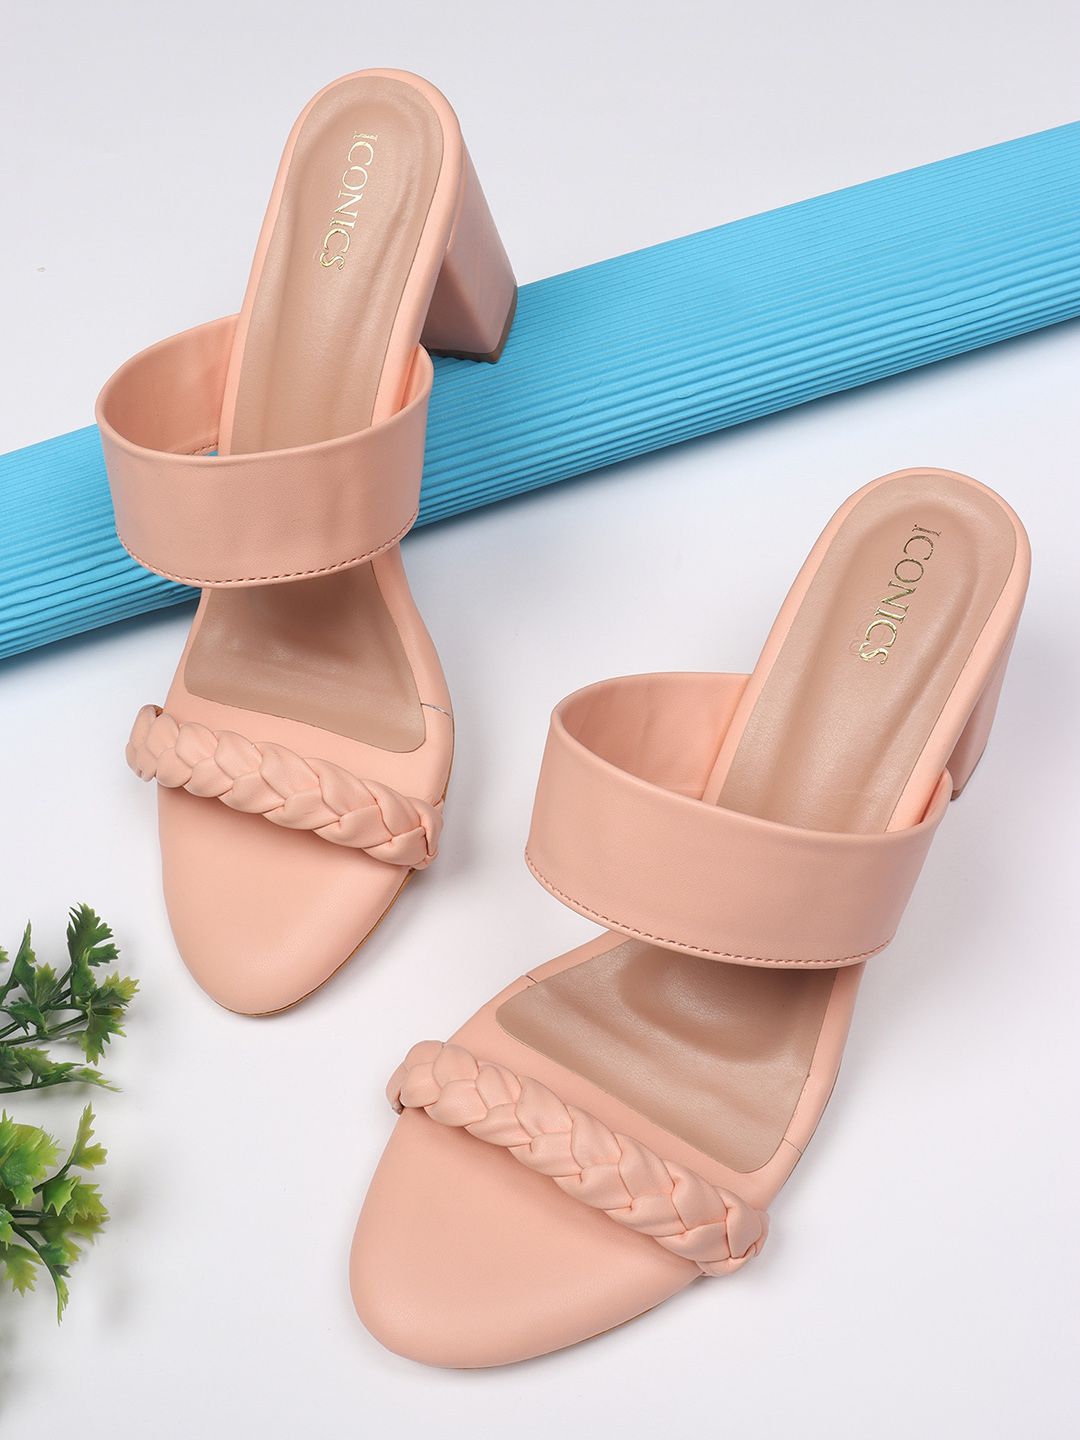 ICONICS Peach-Coloured Block Sandals Price in India